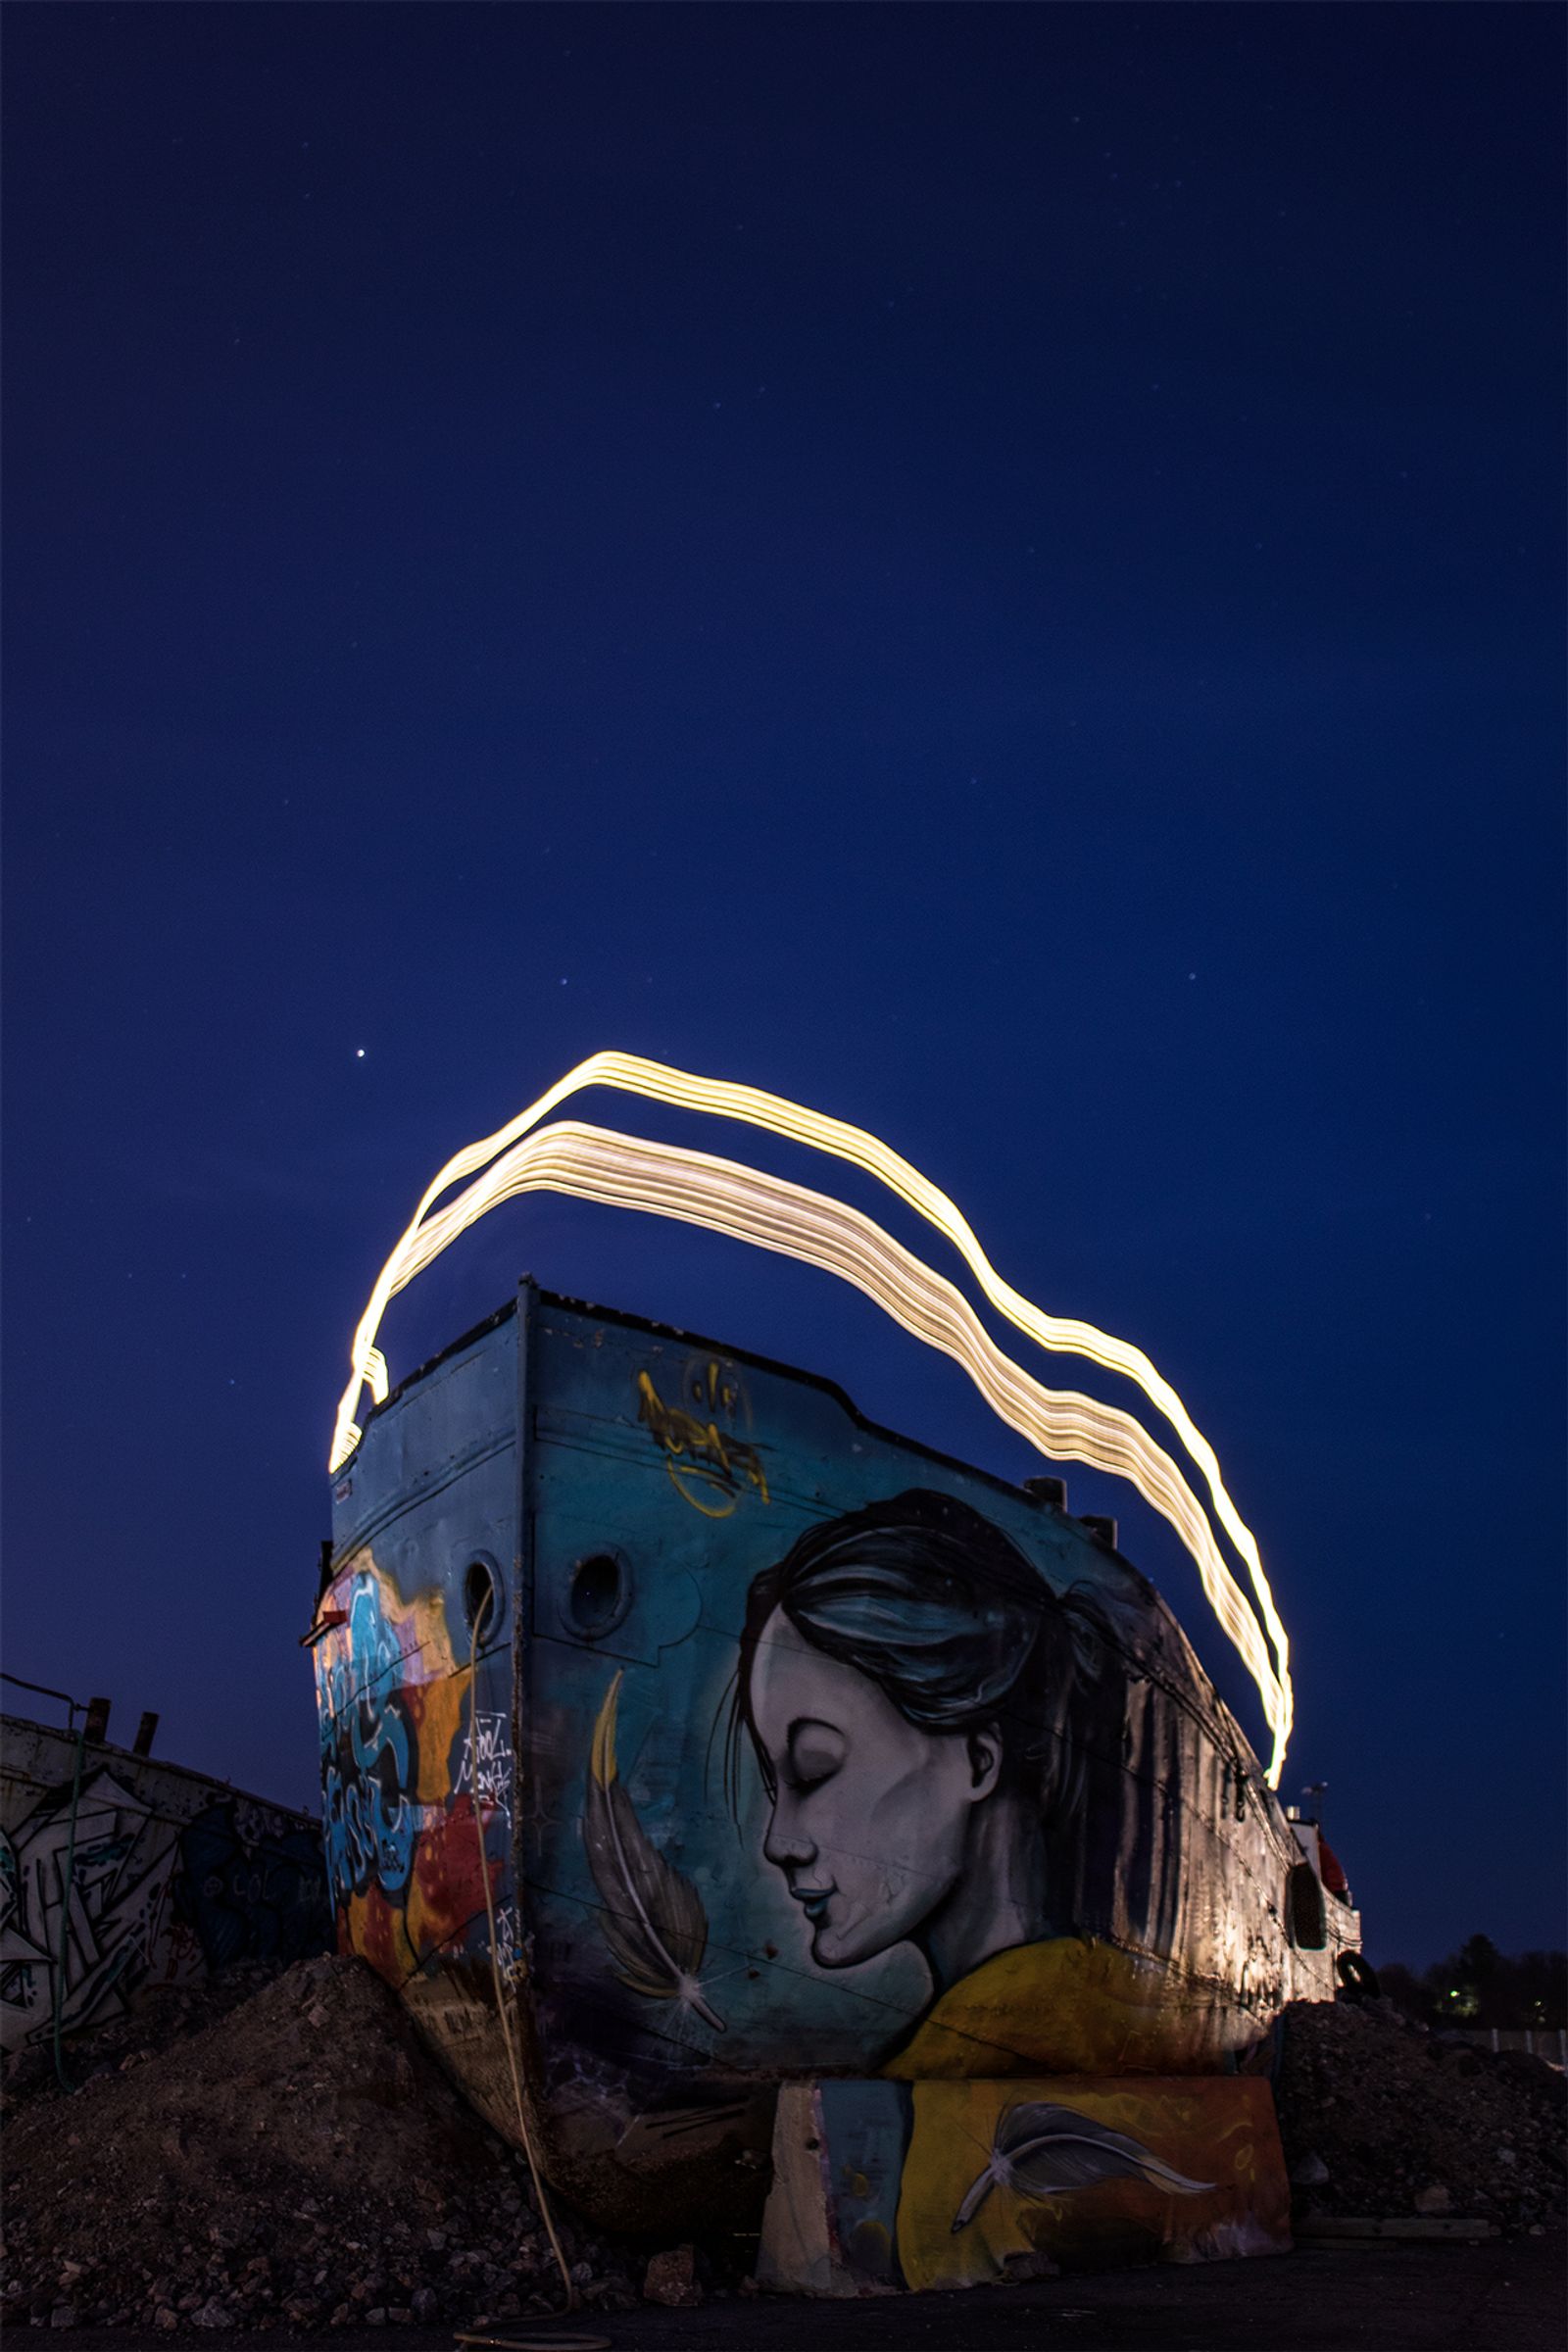 Graffiteilla täytetty laiva, jonka päällä on valolla maalattu kuvio pitkin laivan reunaa